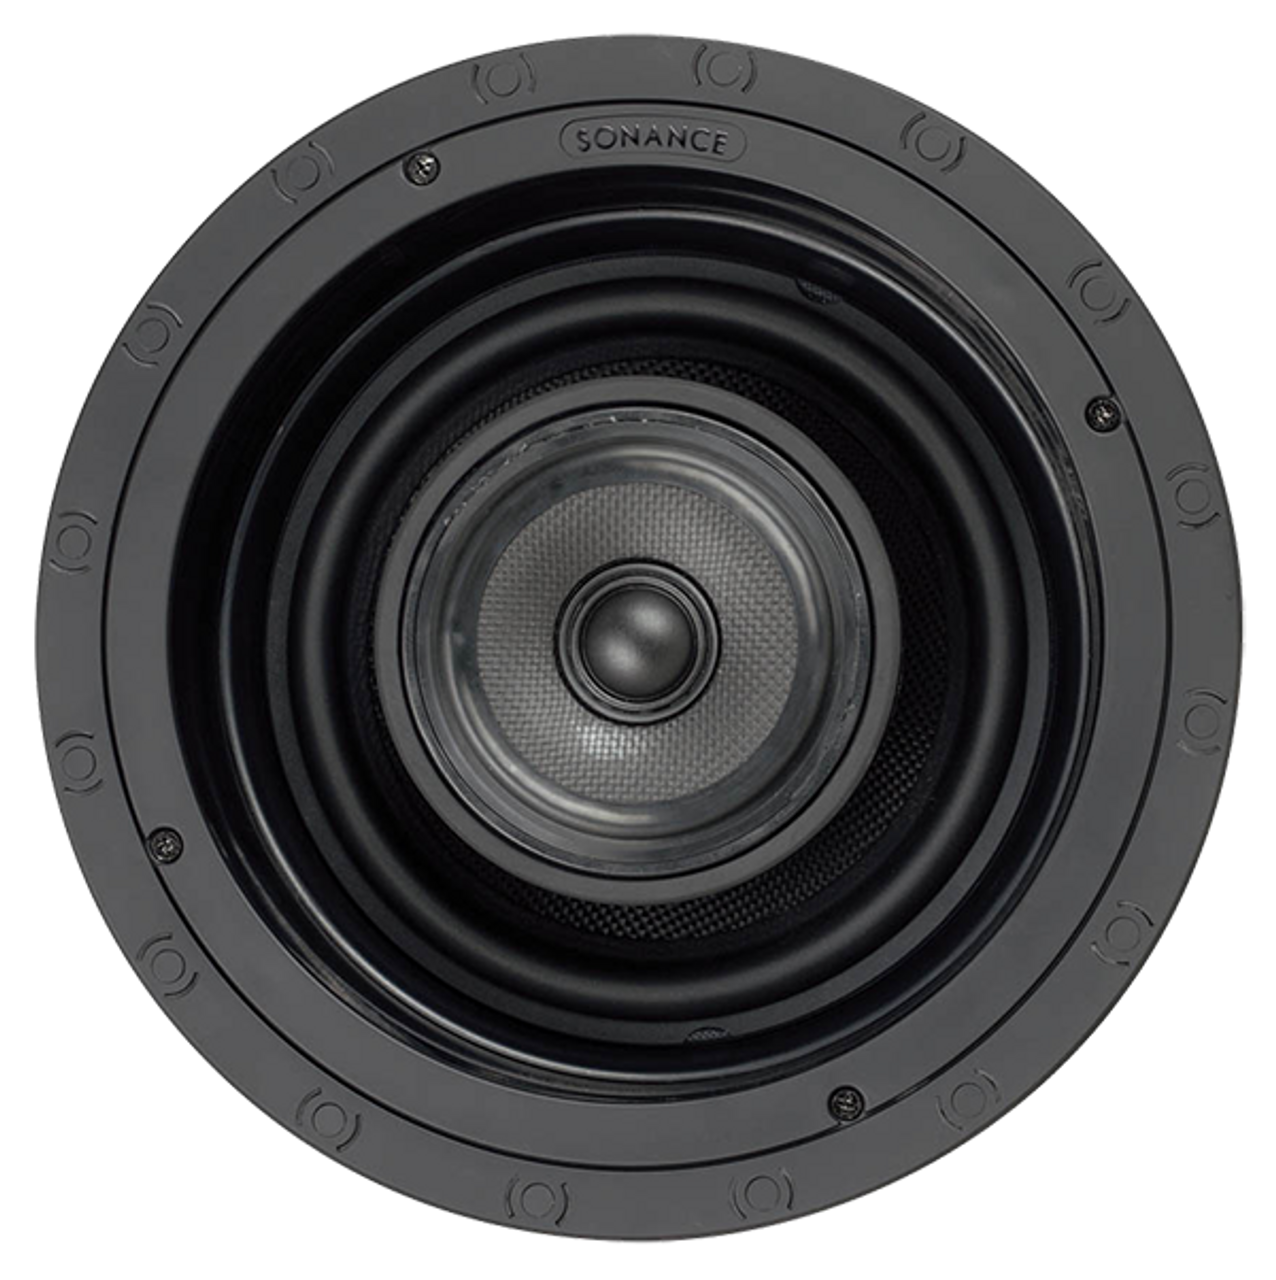 review sonance speakers vp series